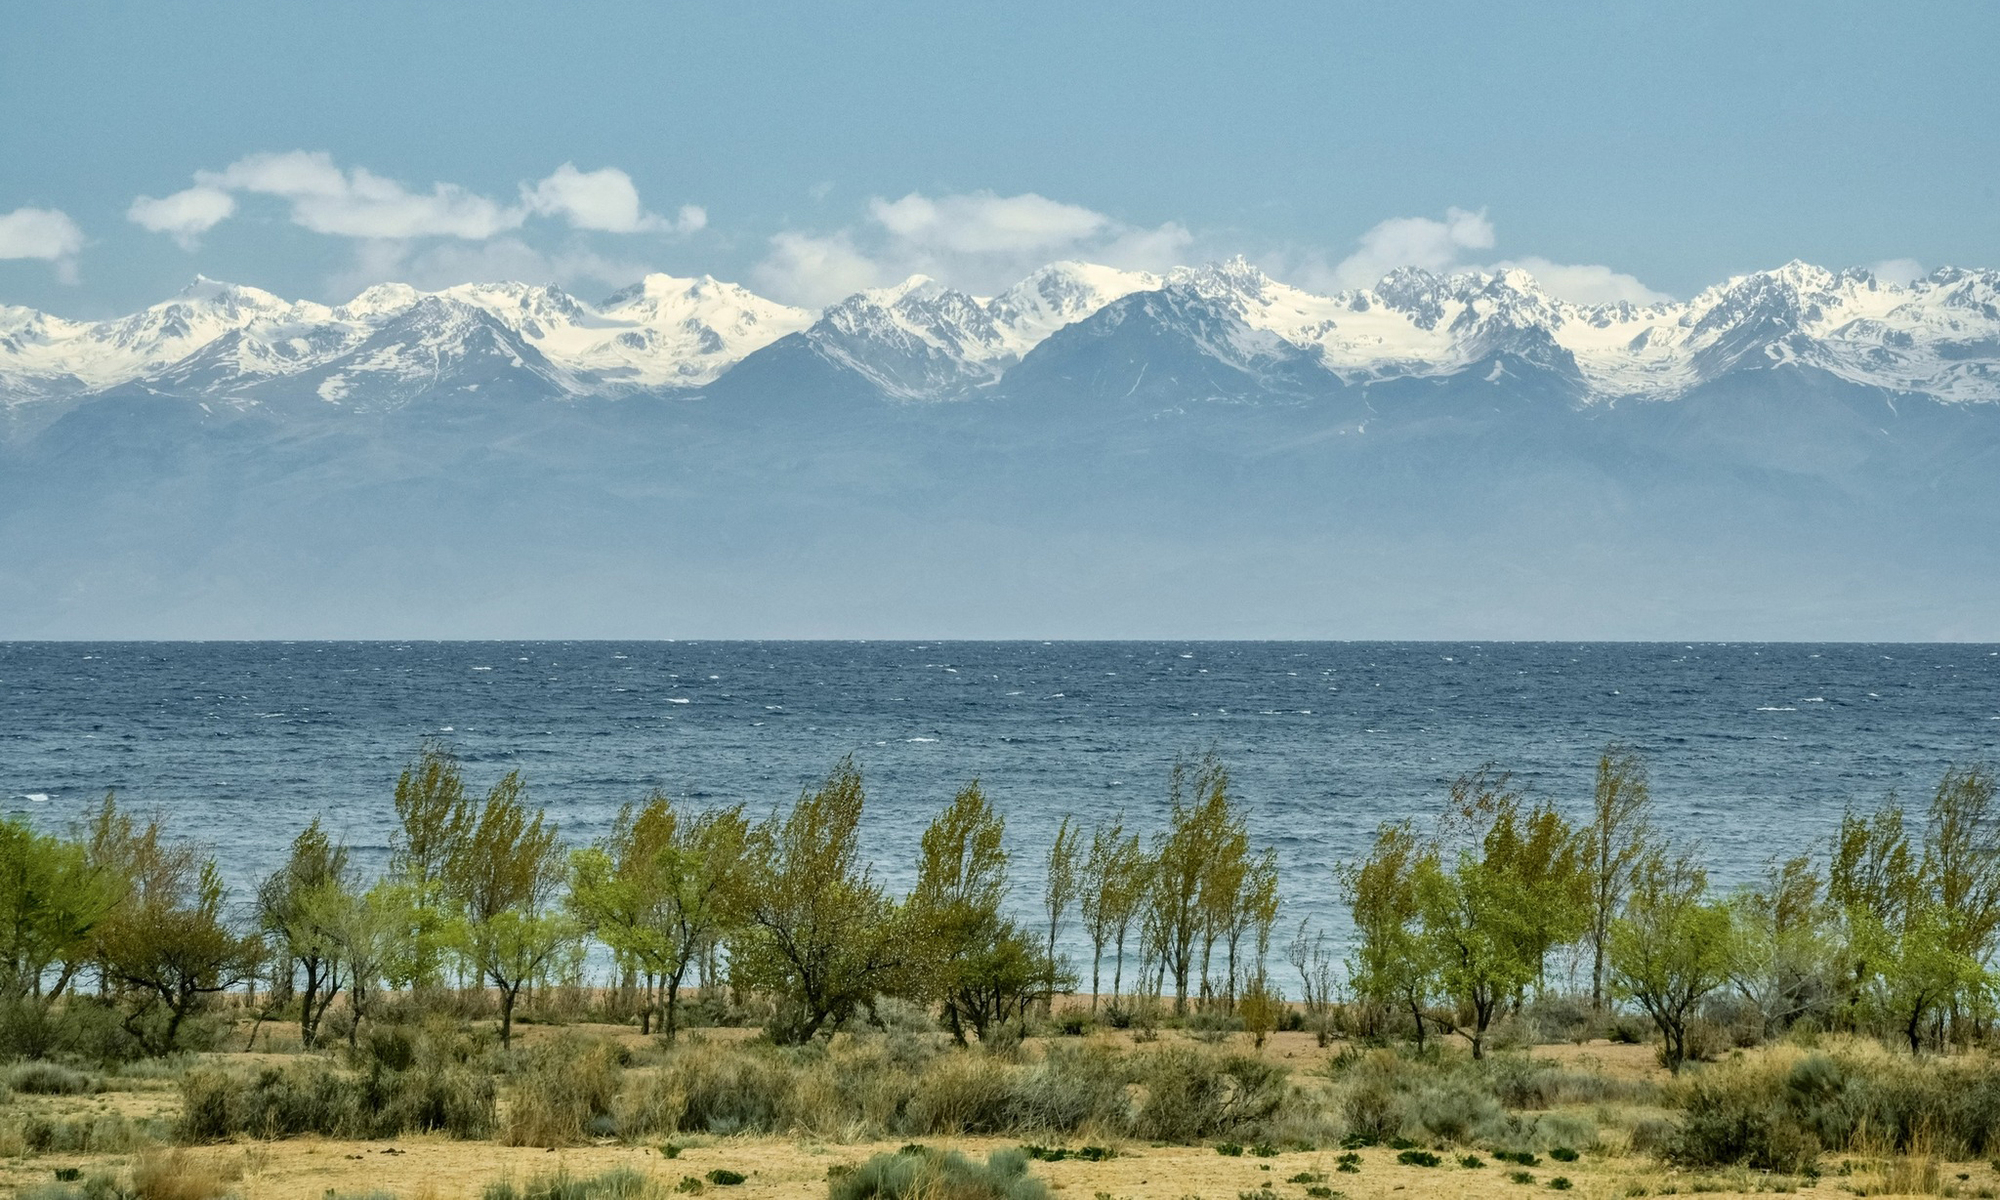 Hồ Issyk Kul - hồ nuớc ngọt trên núi lớn thứ 2 thế giới.